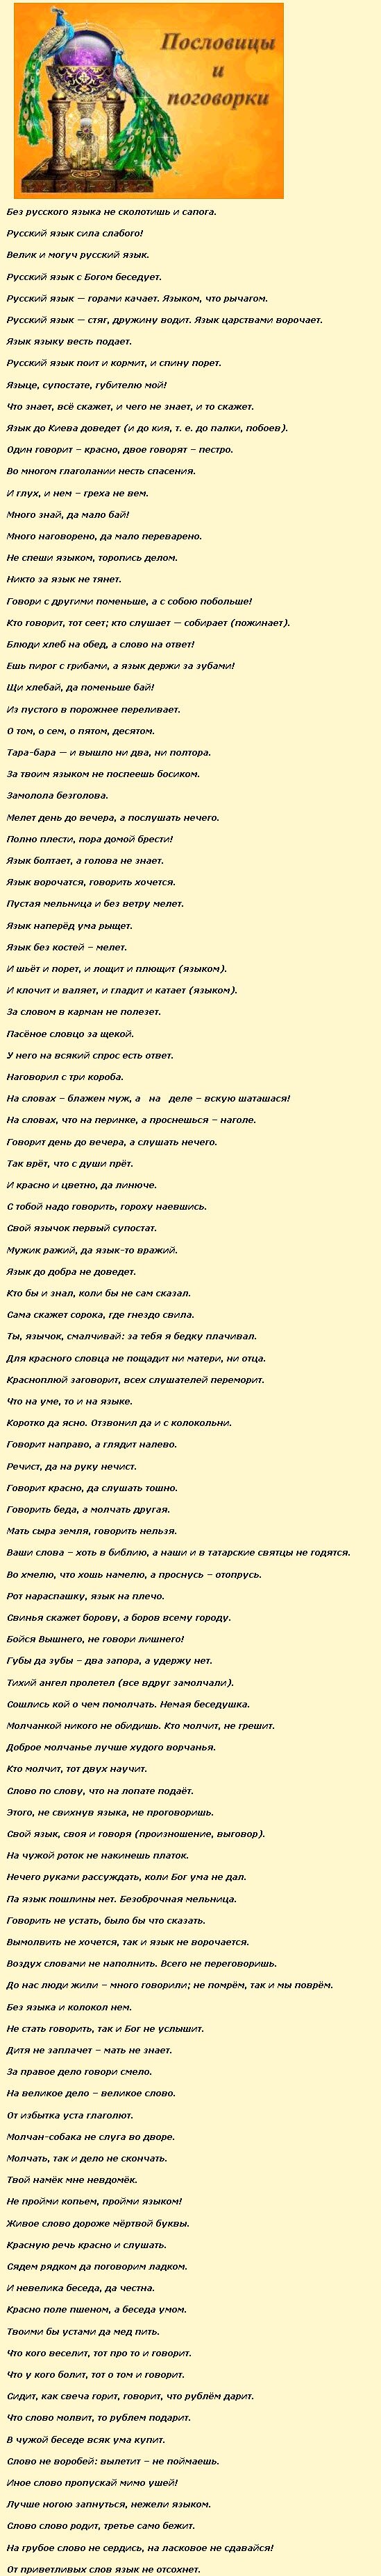 Семь пословиц о русском языке